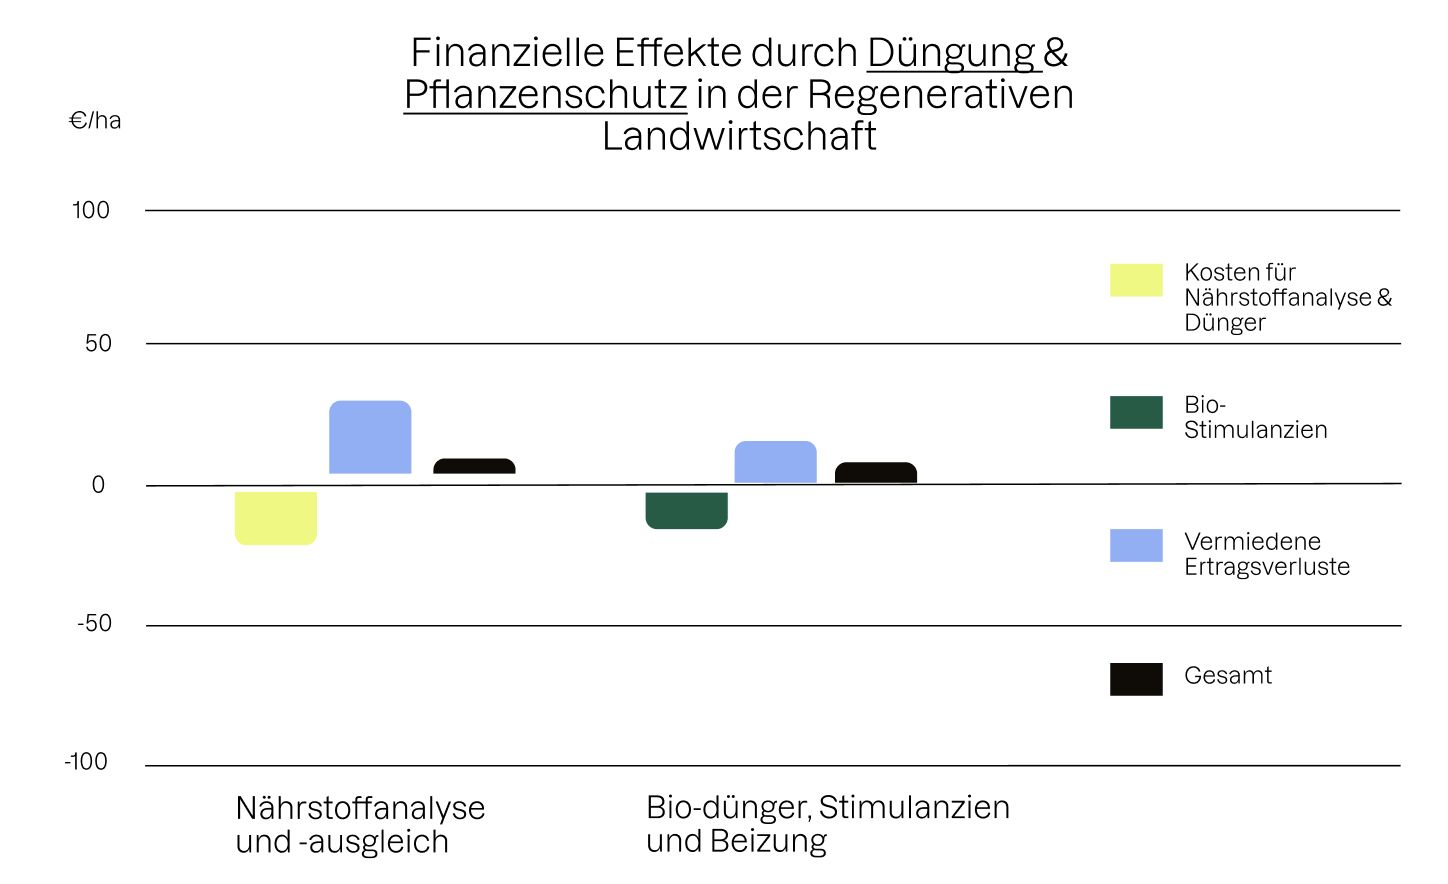 Diagramm zur Abbildung finanzieller Effekte durch Düngung und Pflanzenschutz